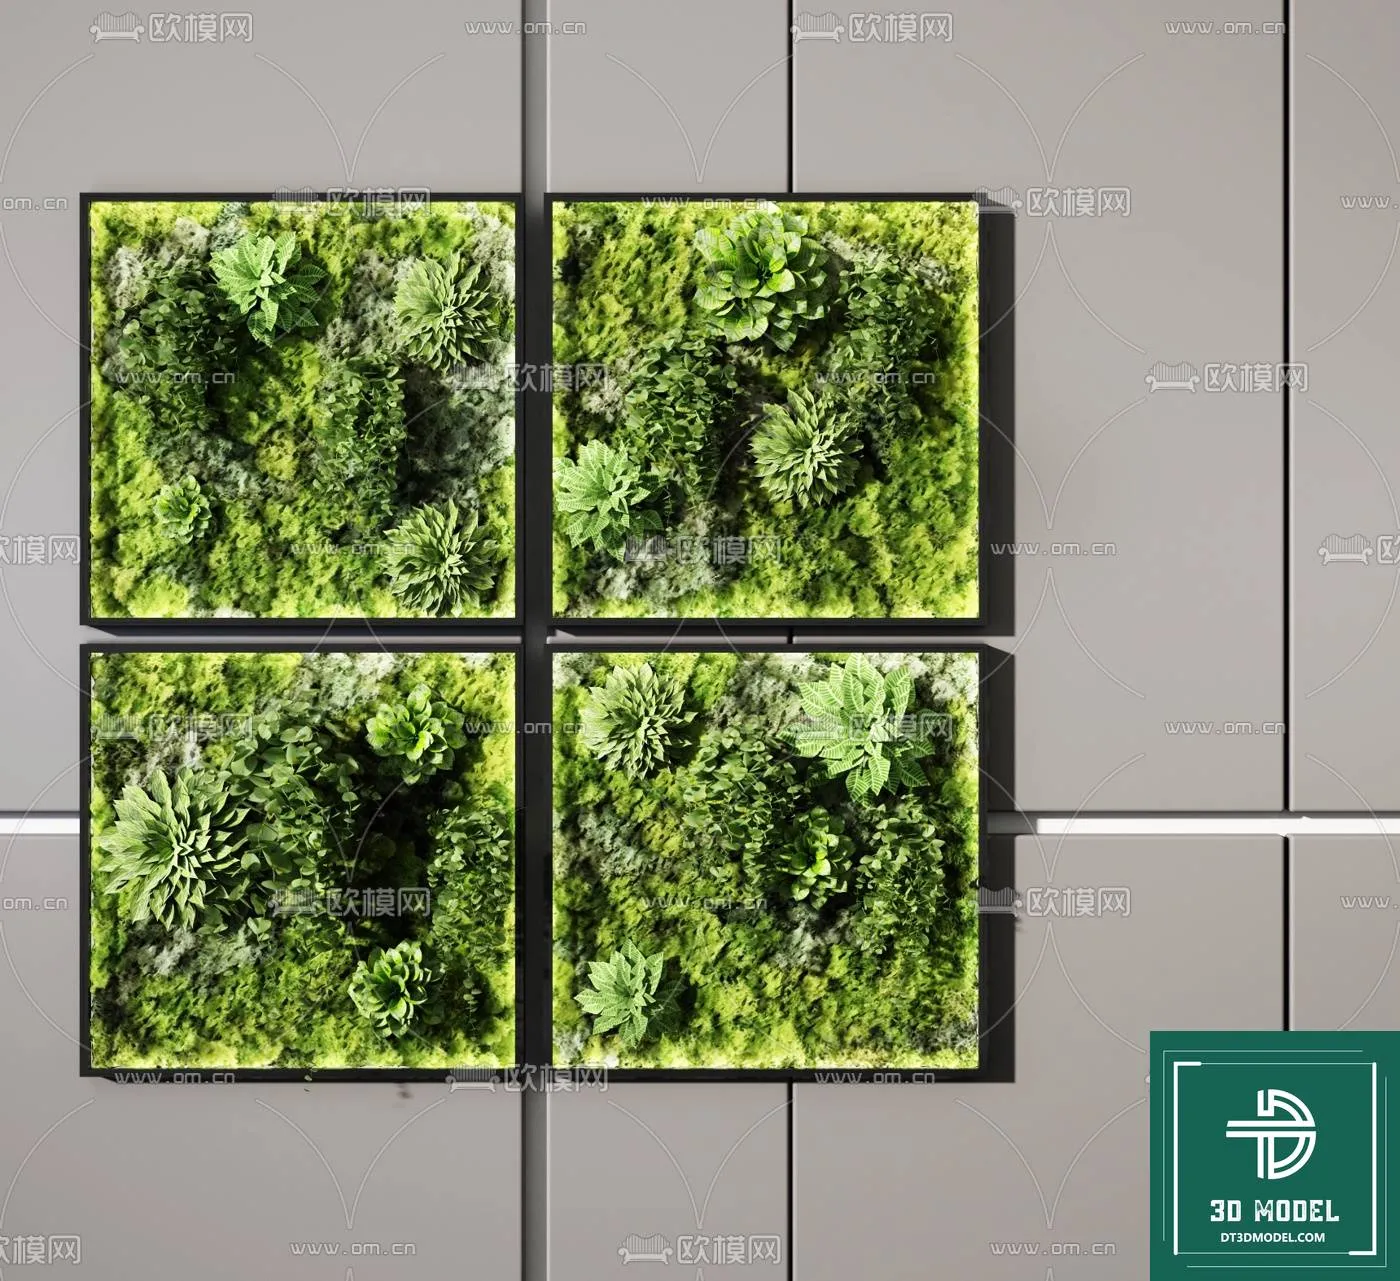 VERTICAL GARDEN – FITOWALL PLANT 3D MODEL – 037